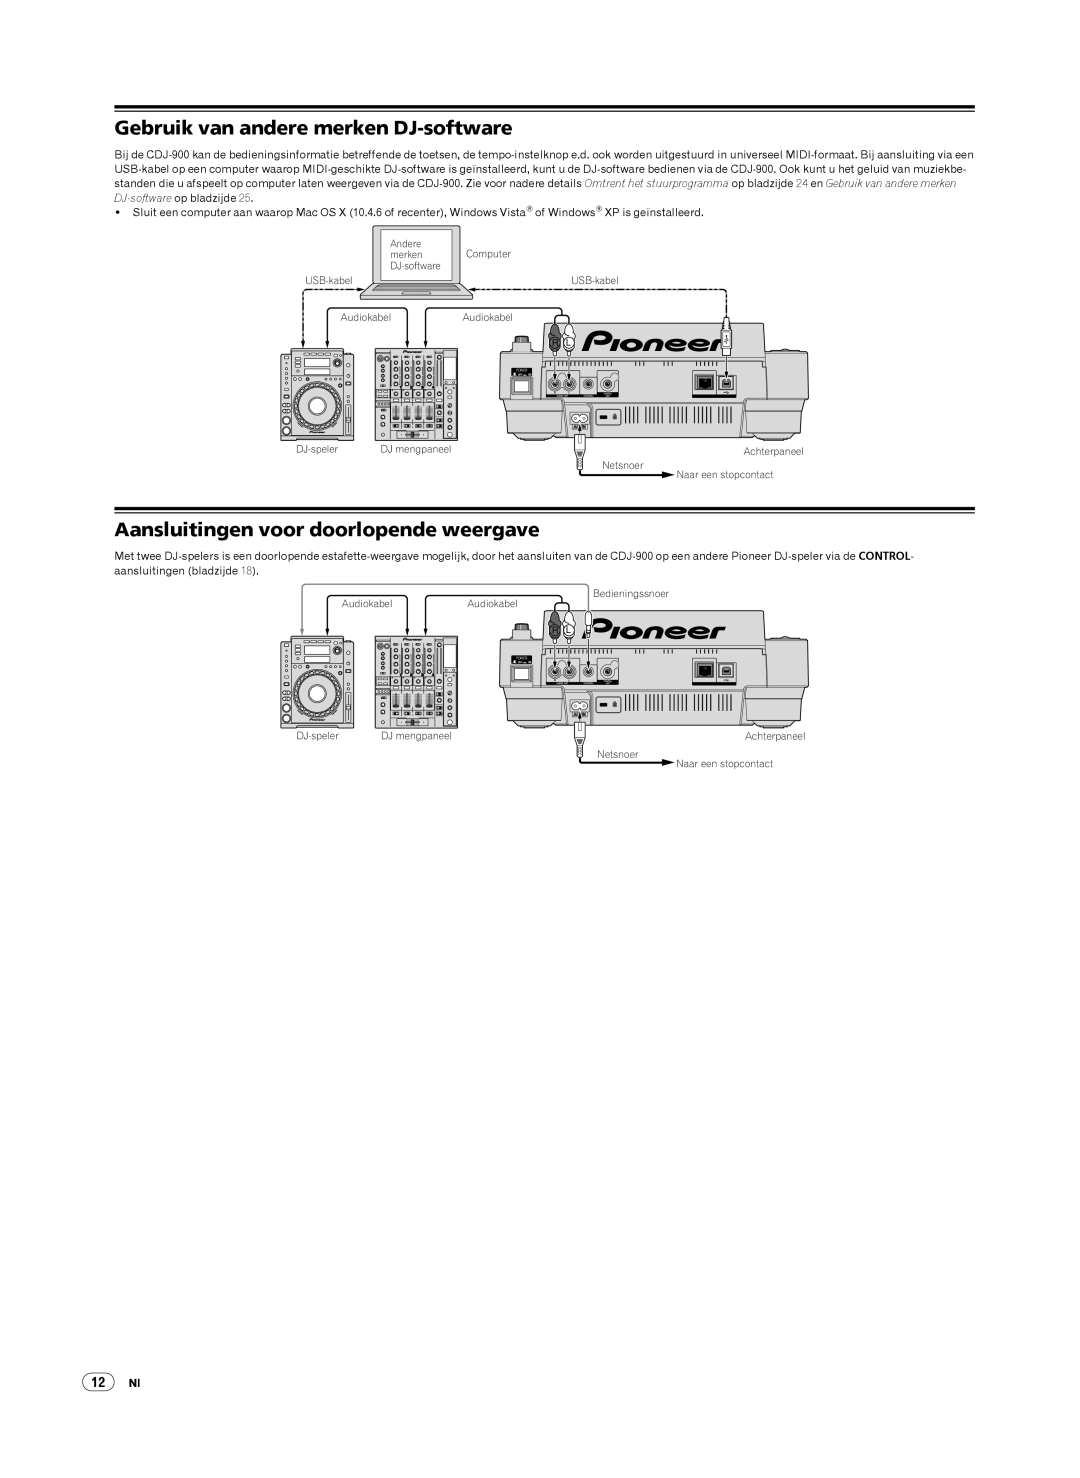 Pioneer CDJ-900, Multi Player Gebruik van andere merken DJ-software, Aansluitingen voor doorlopende weergave, 12Nl 